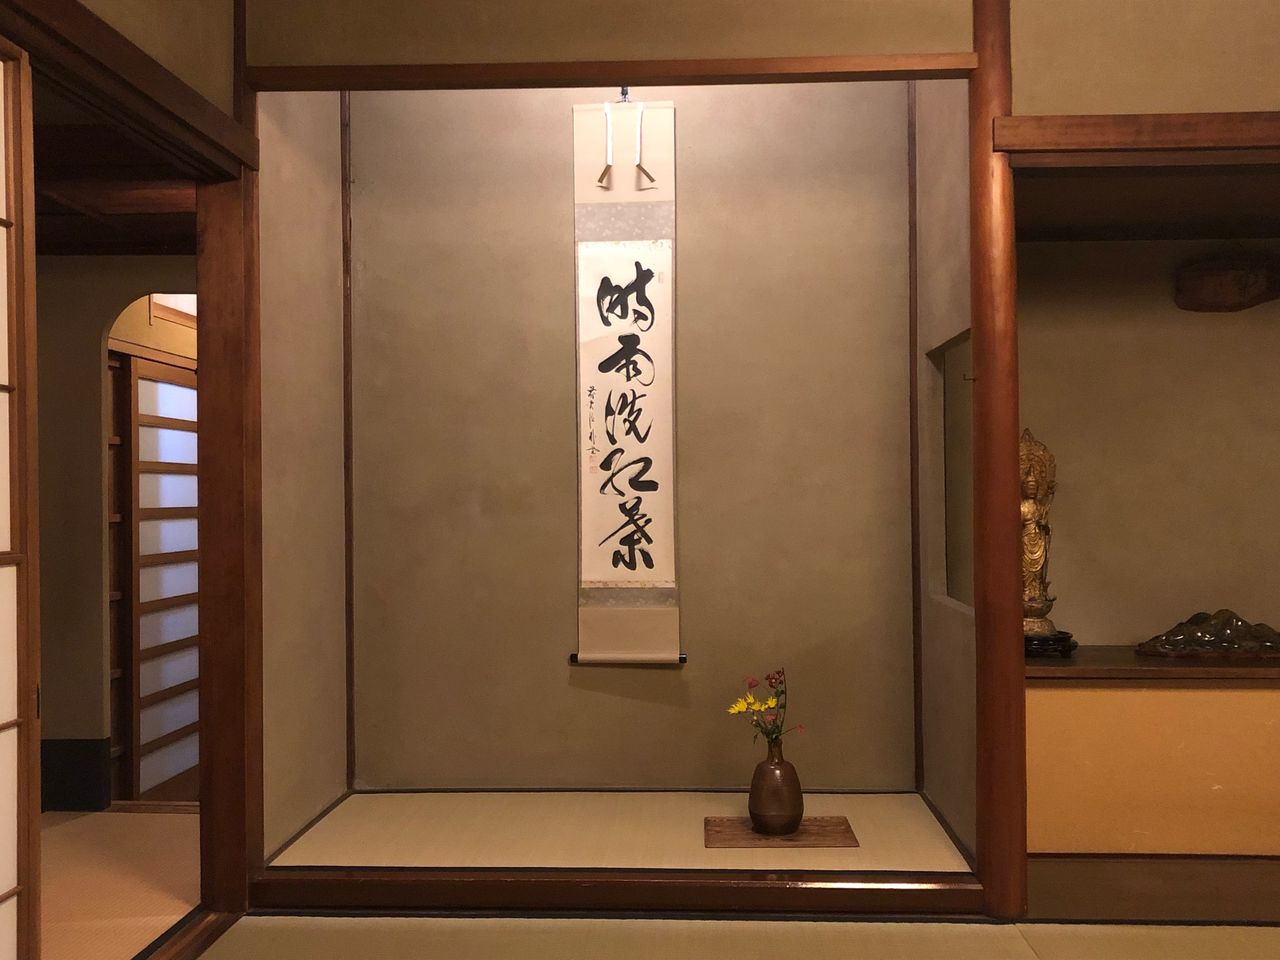 Tokonoma orné de chabana (fleurs de thé) et d'un rouleau suspendu